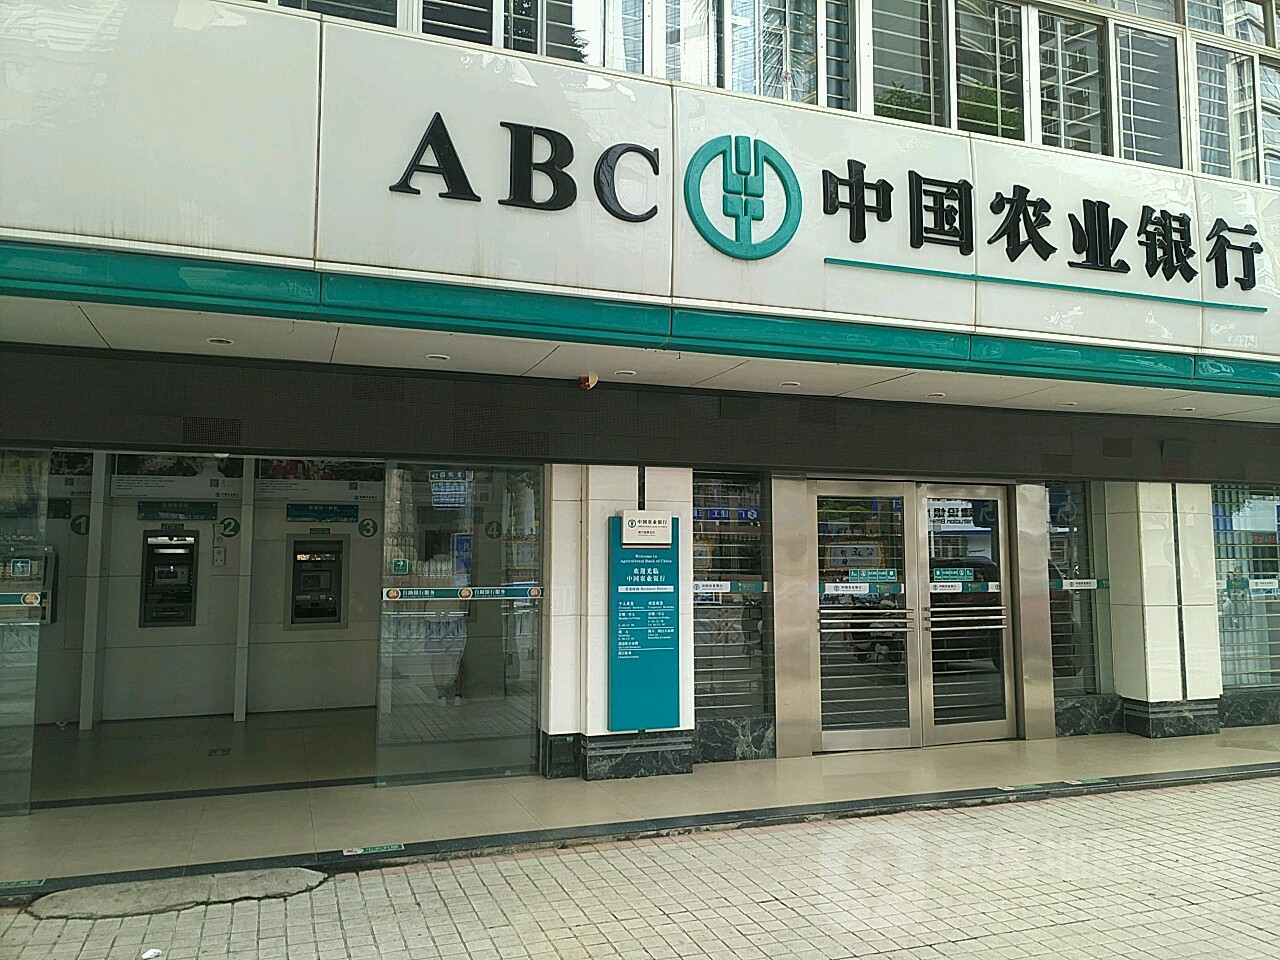 中國農業銀行24小時自助銀行(嘉賓路店)